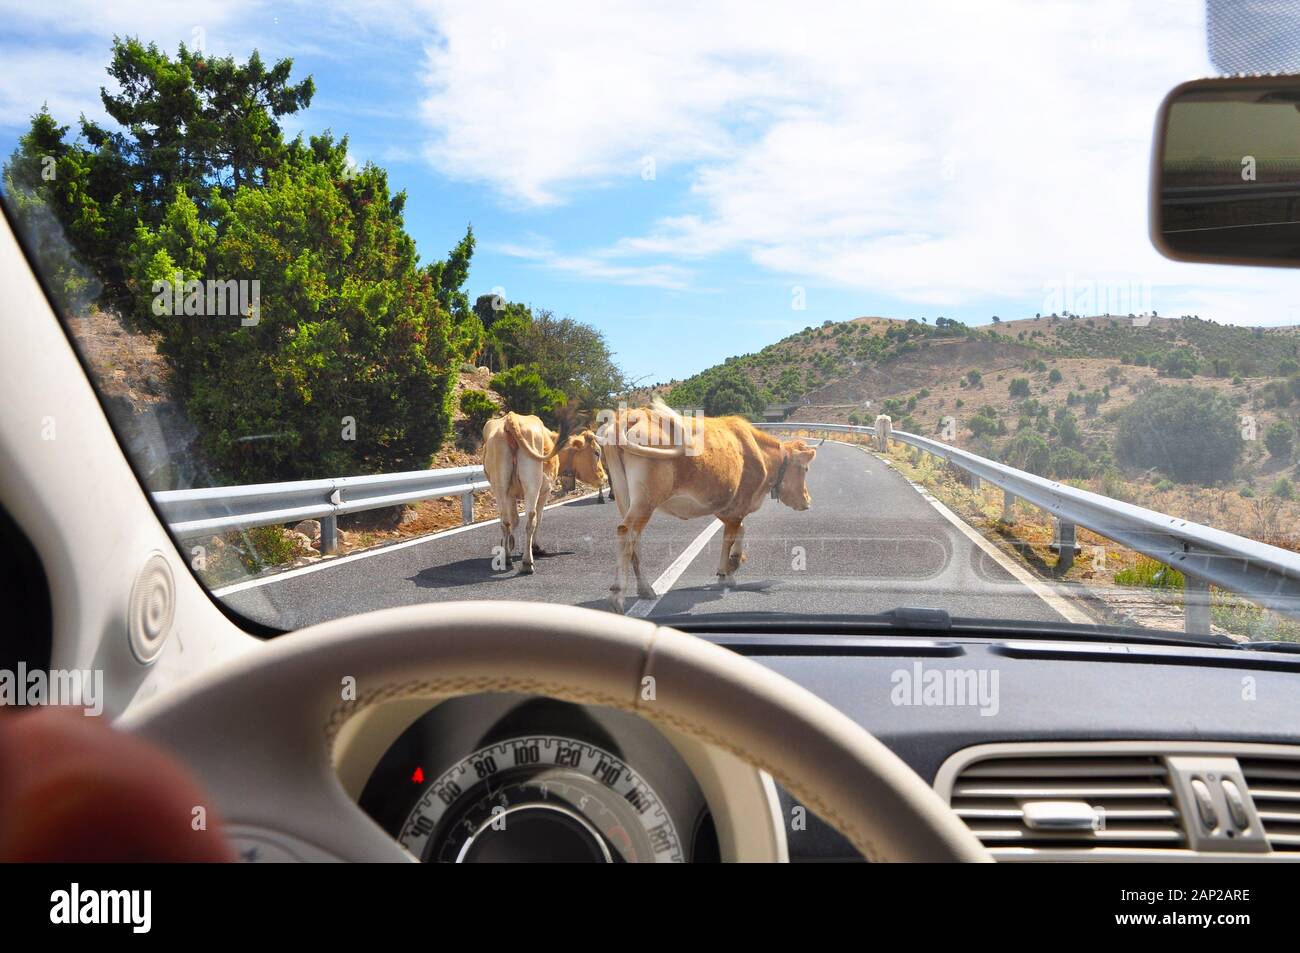 Die Gefahr von Unfällen im Straßenverkehr - Tiere auf der Landebahn während der Fahrt Stockfoto